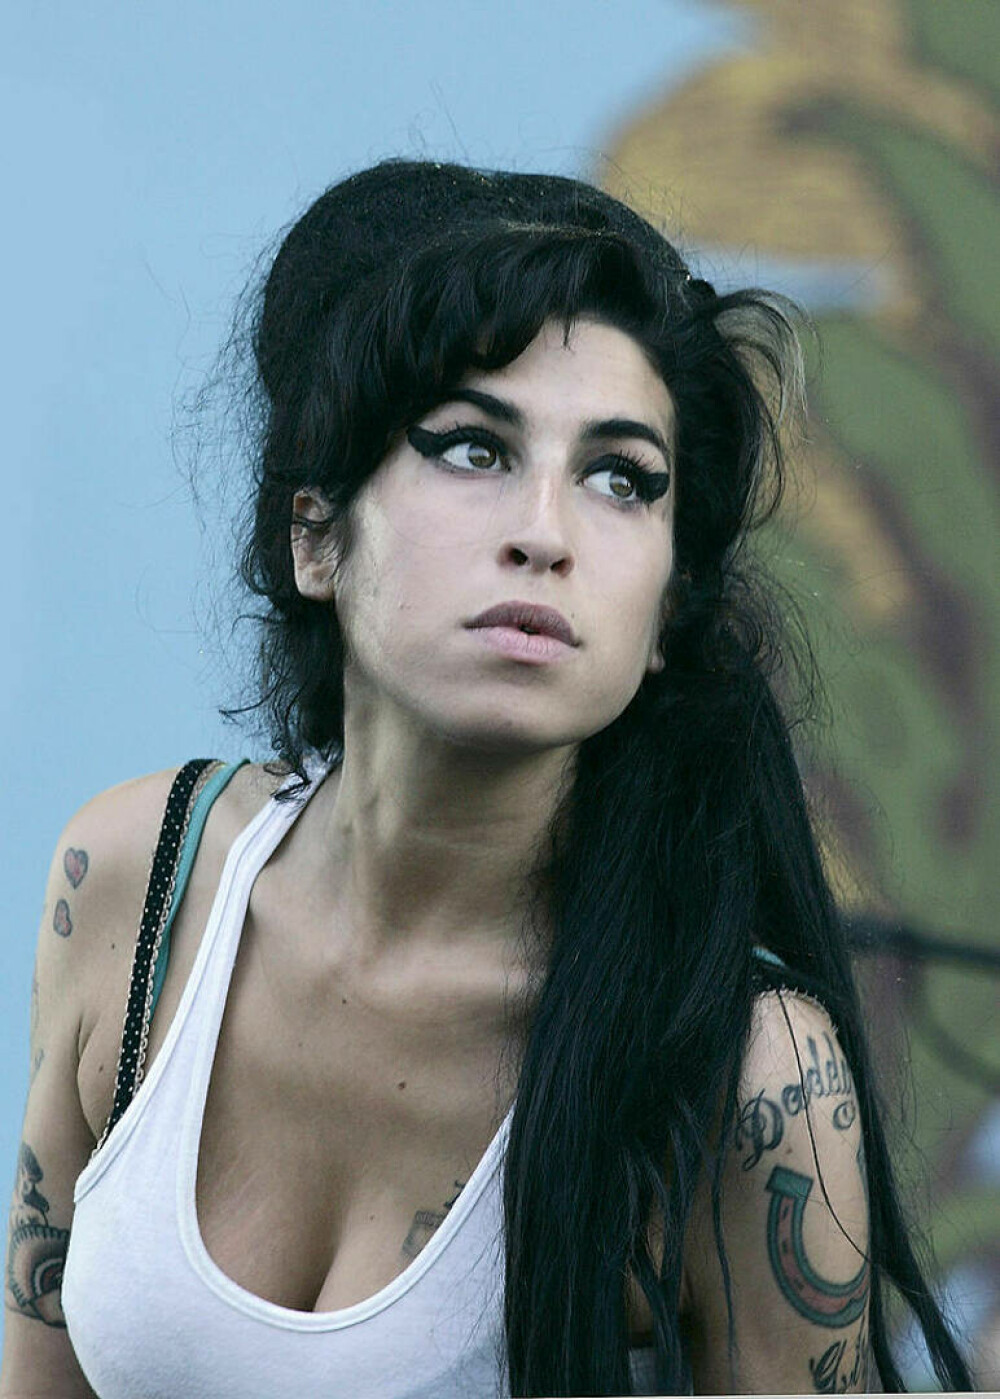 Imagini de colecție cu Amy Winehouse. Cântăreața ar fi împlinit astăzi 40 de ani | FOTO - Imaginea 6